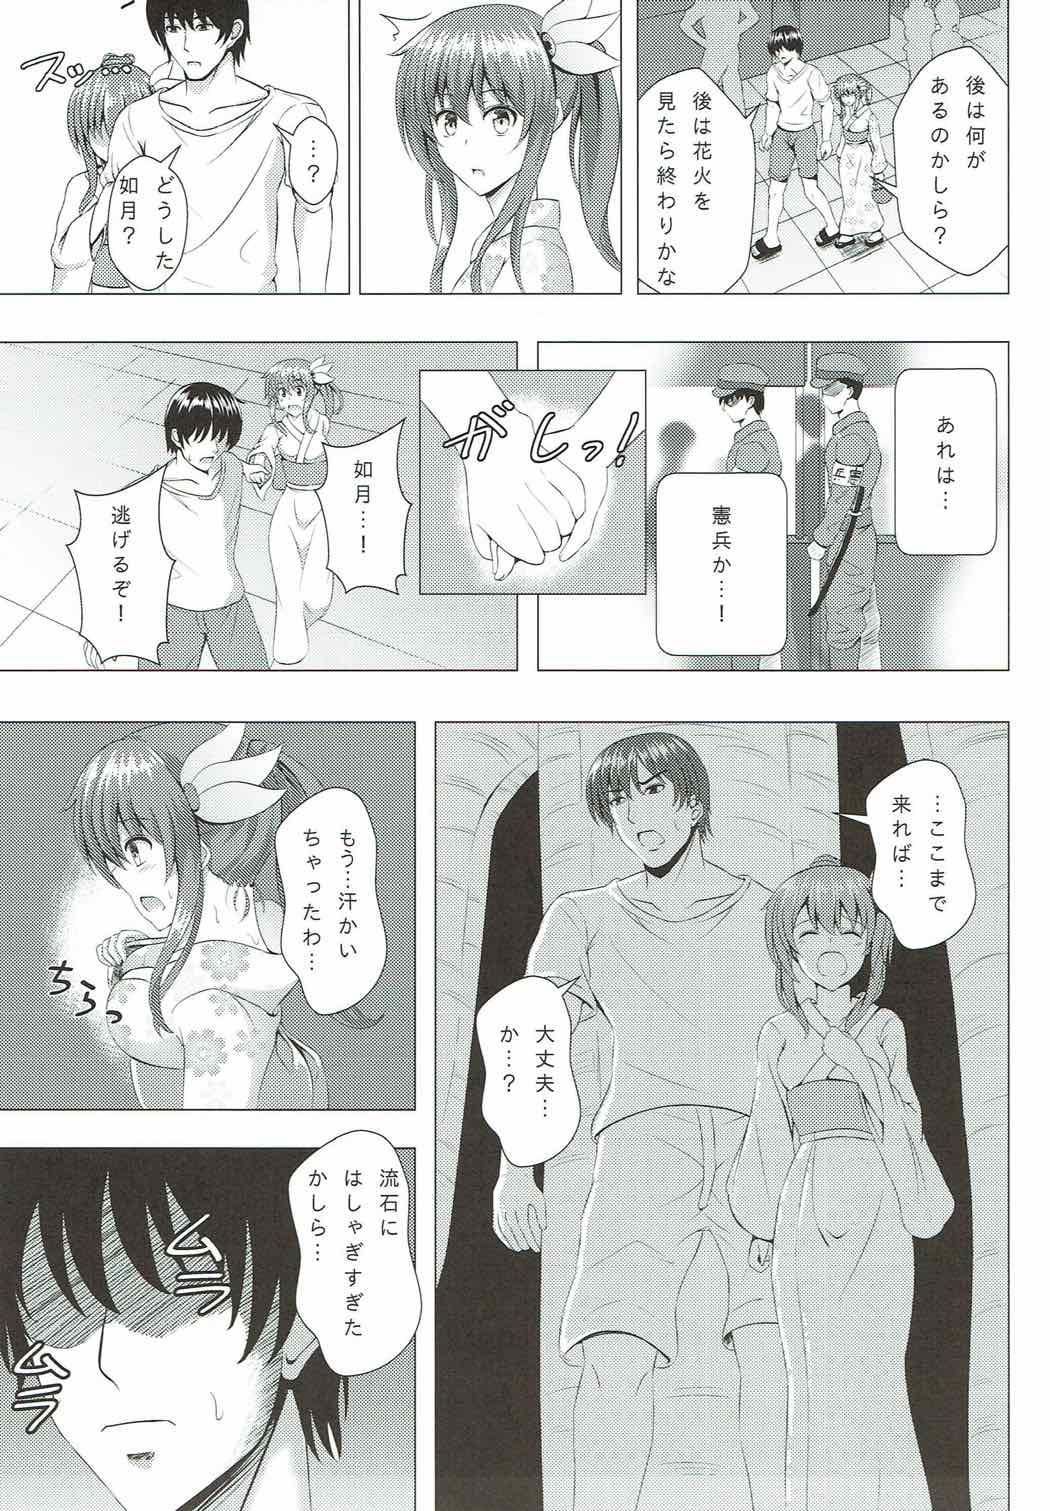 Gostoso Keikoku no Kisaragi 4 Kisaragi-chan to Natsu no Omoide - Kantai collection Nalgas - Page 6